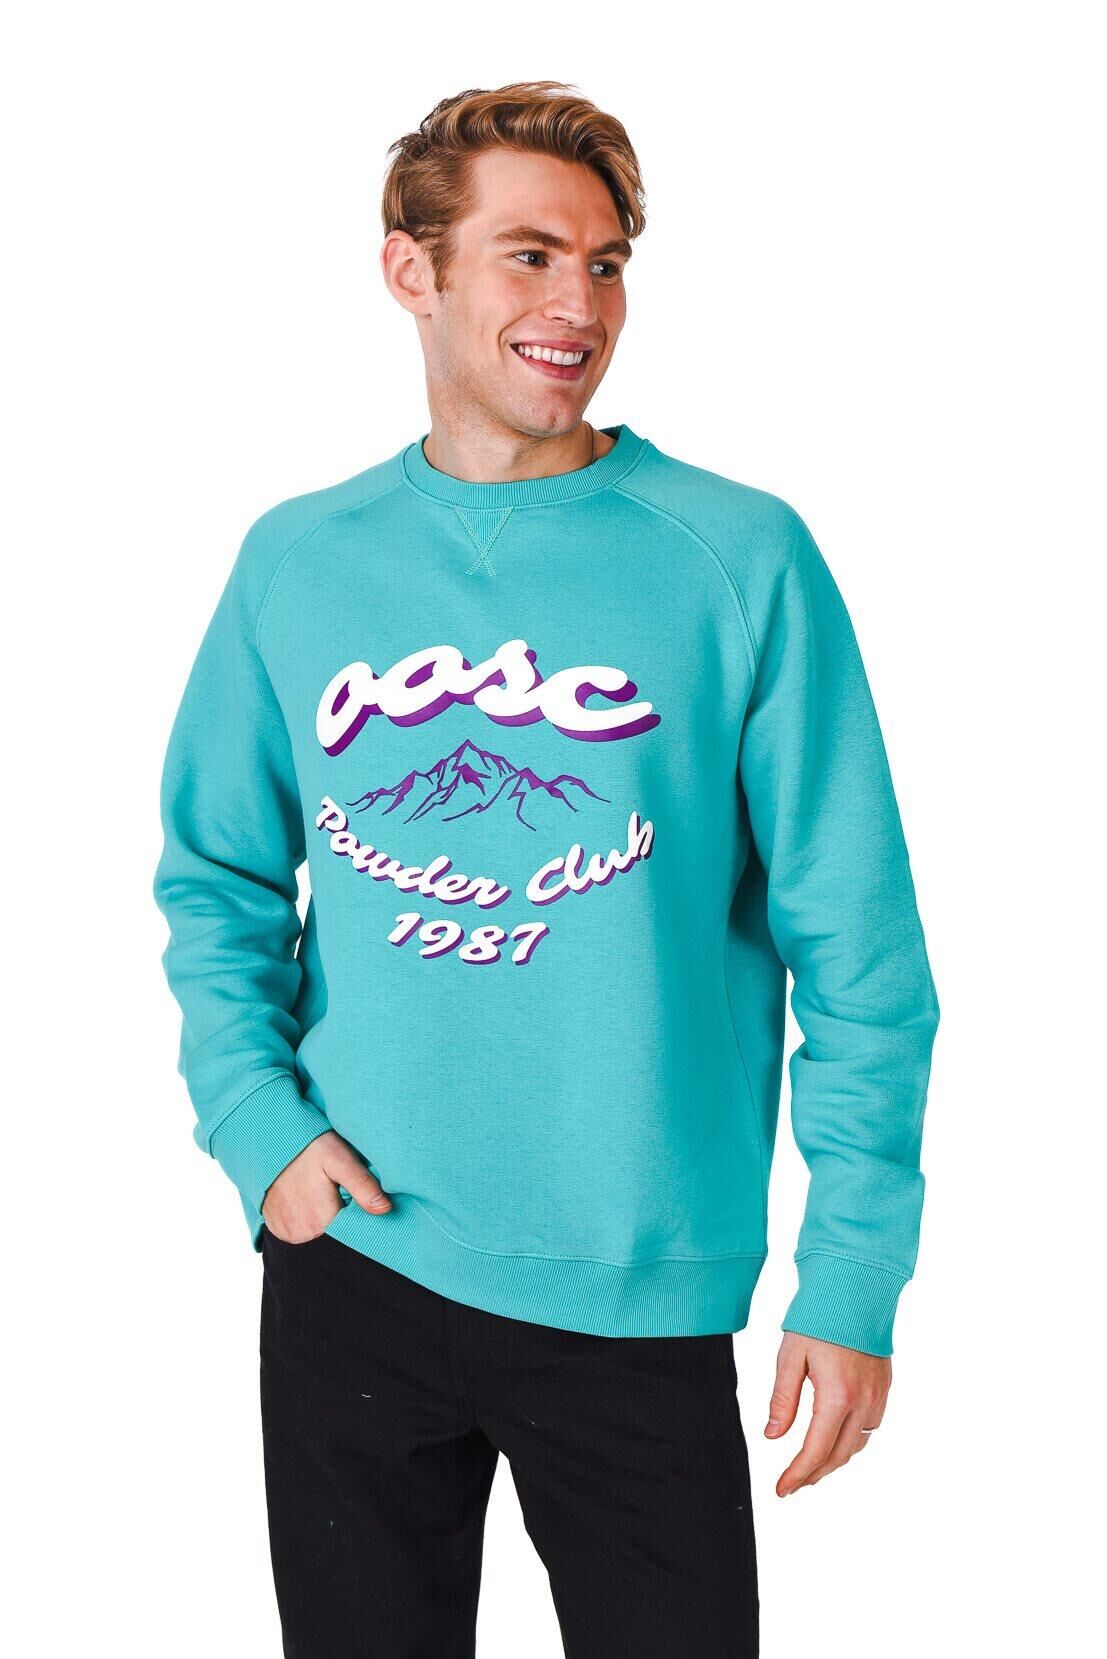 OOSC Powder Club Sweatshirt